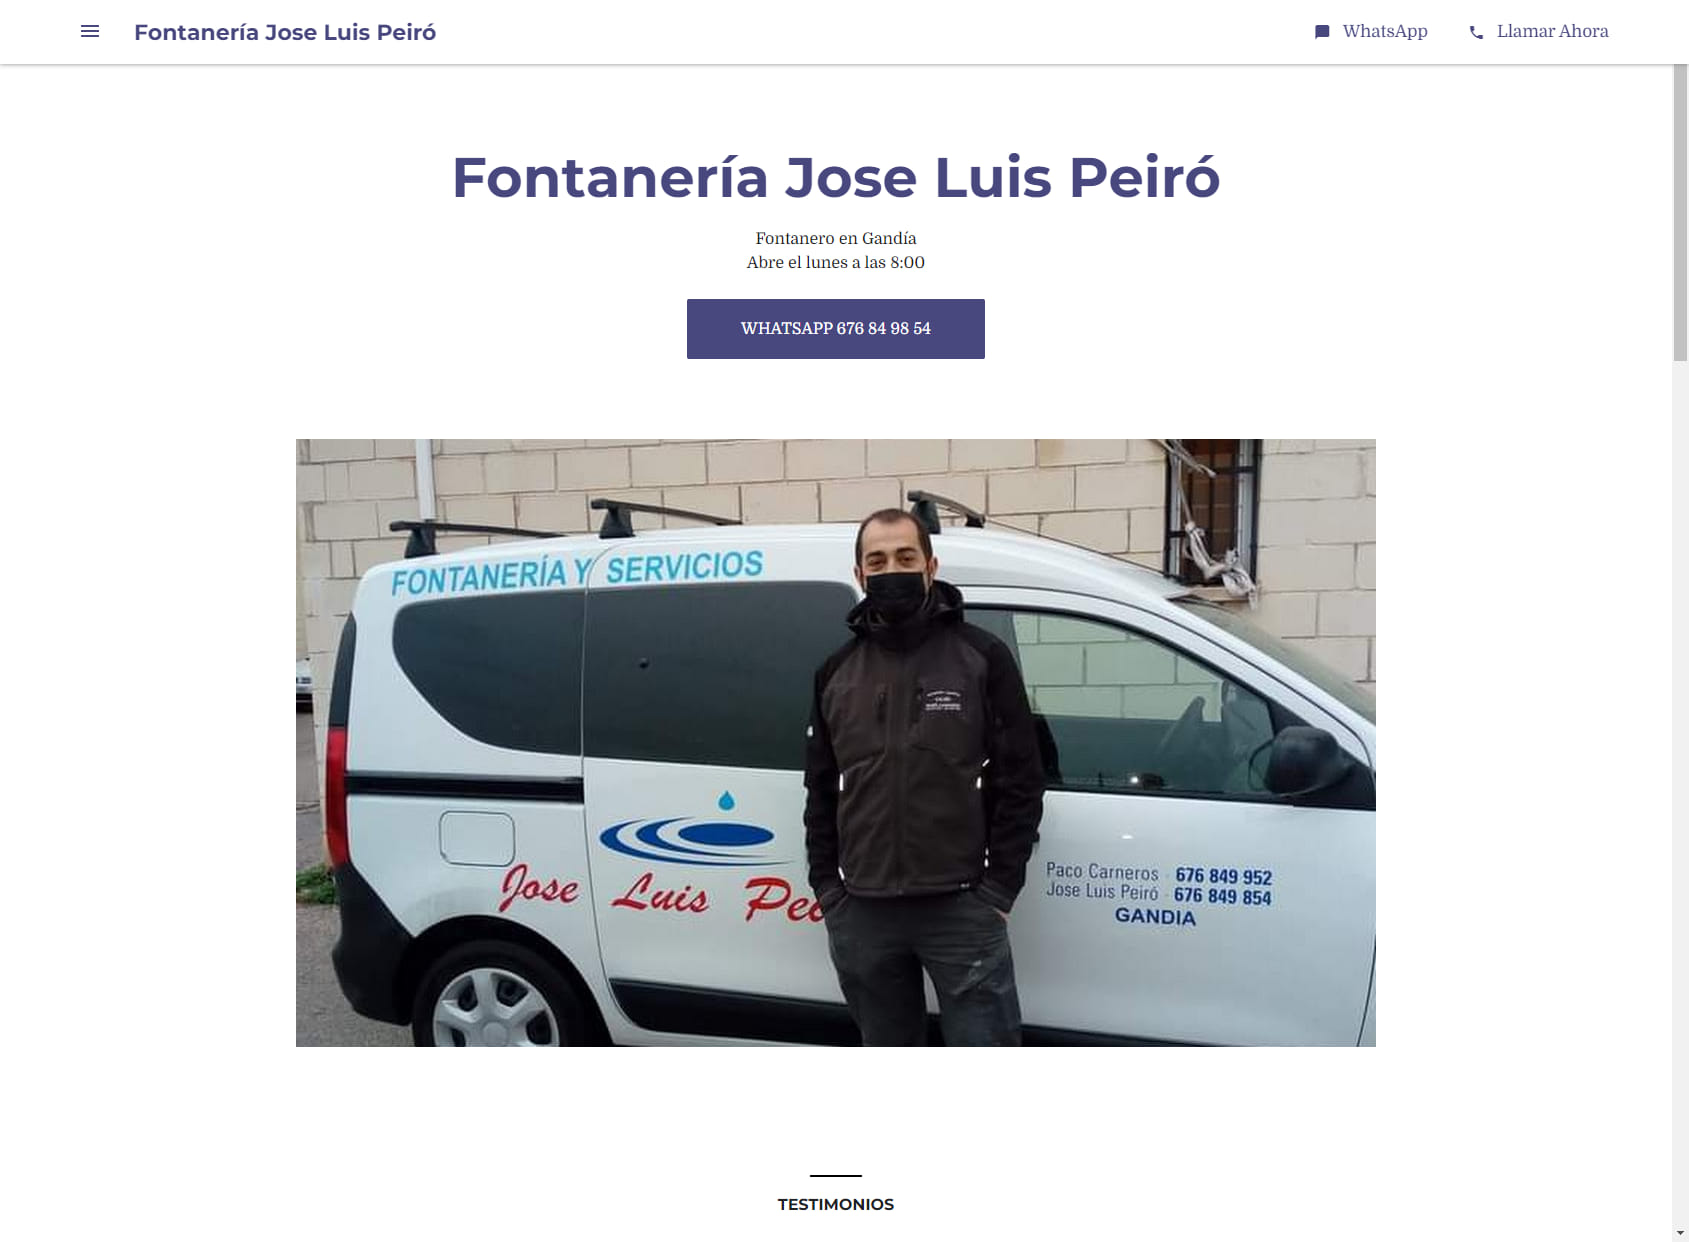 Fontanería Jose Luis Peiró